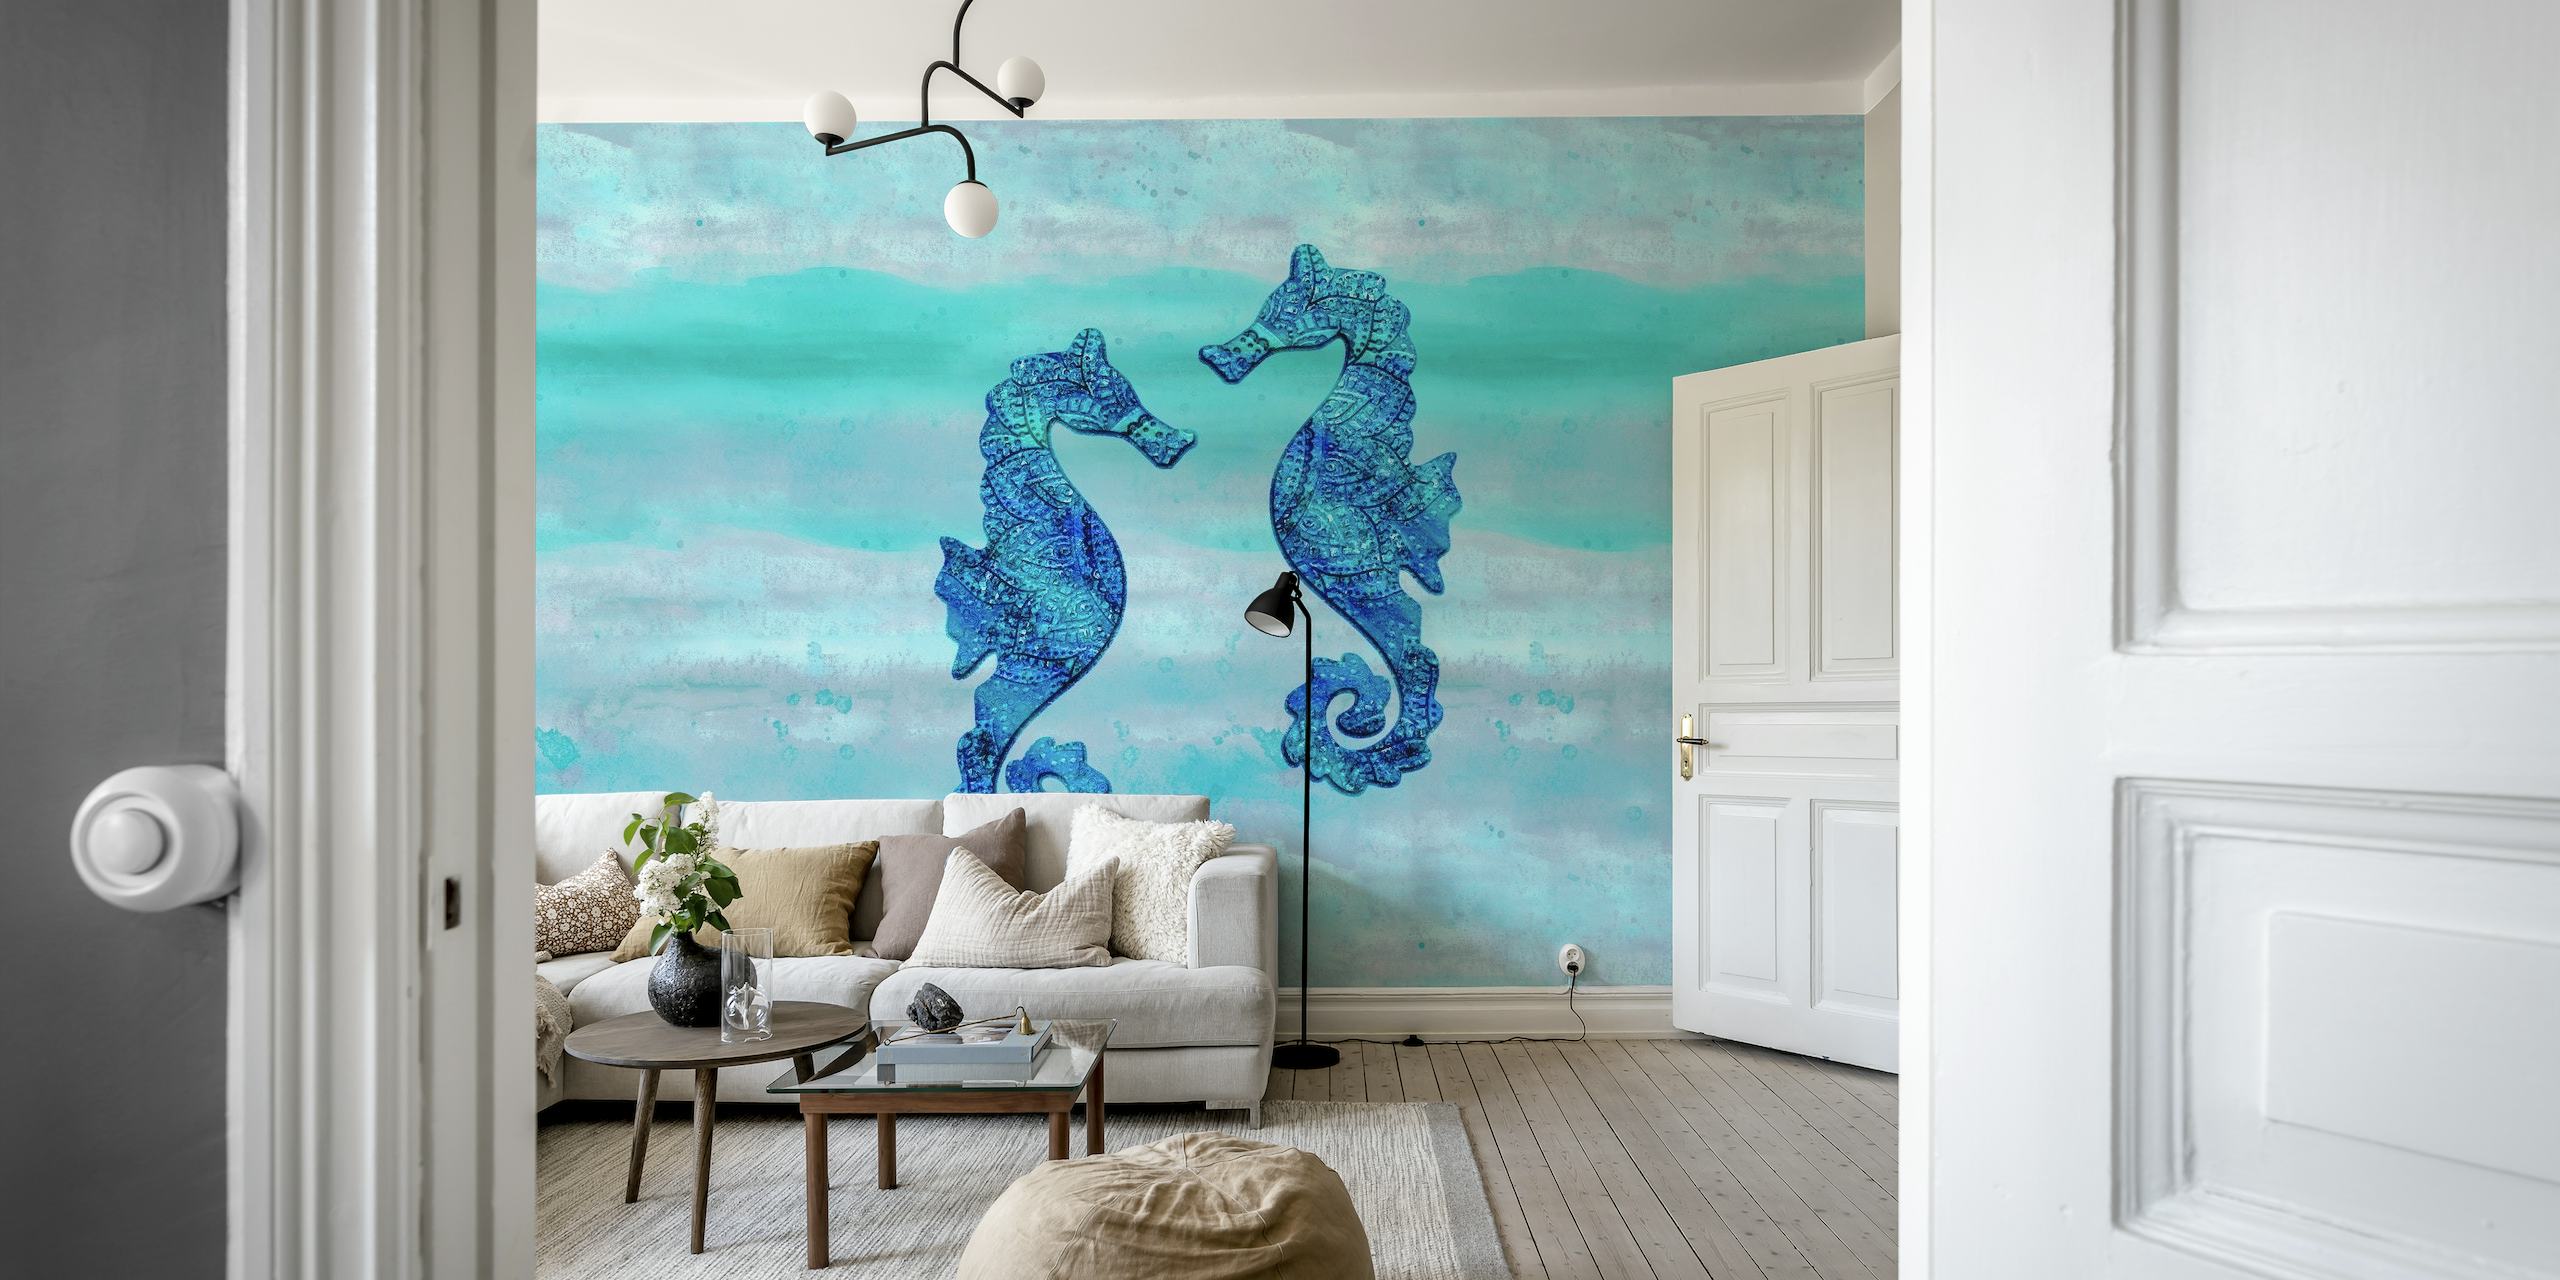 Fotomural vinílico de parede de cavalos-marinhos azuis aquarela em fundo água-marinha